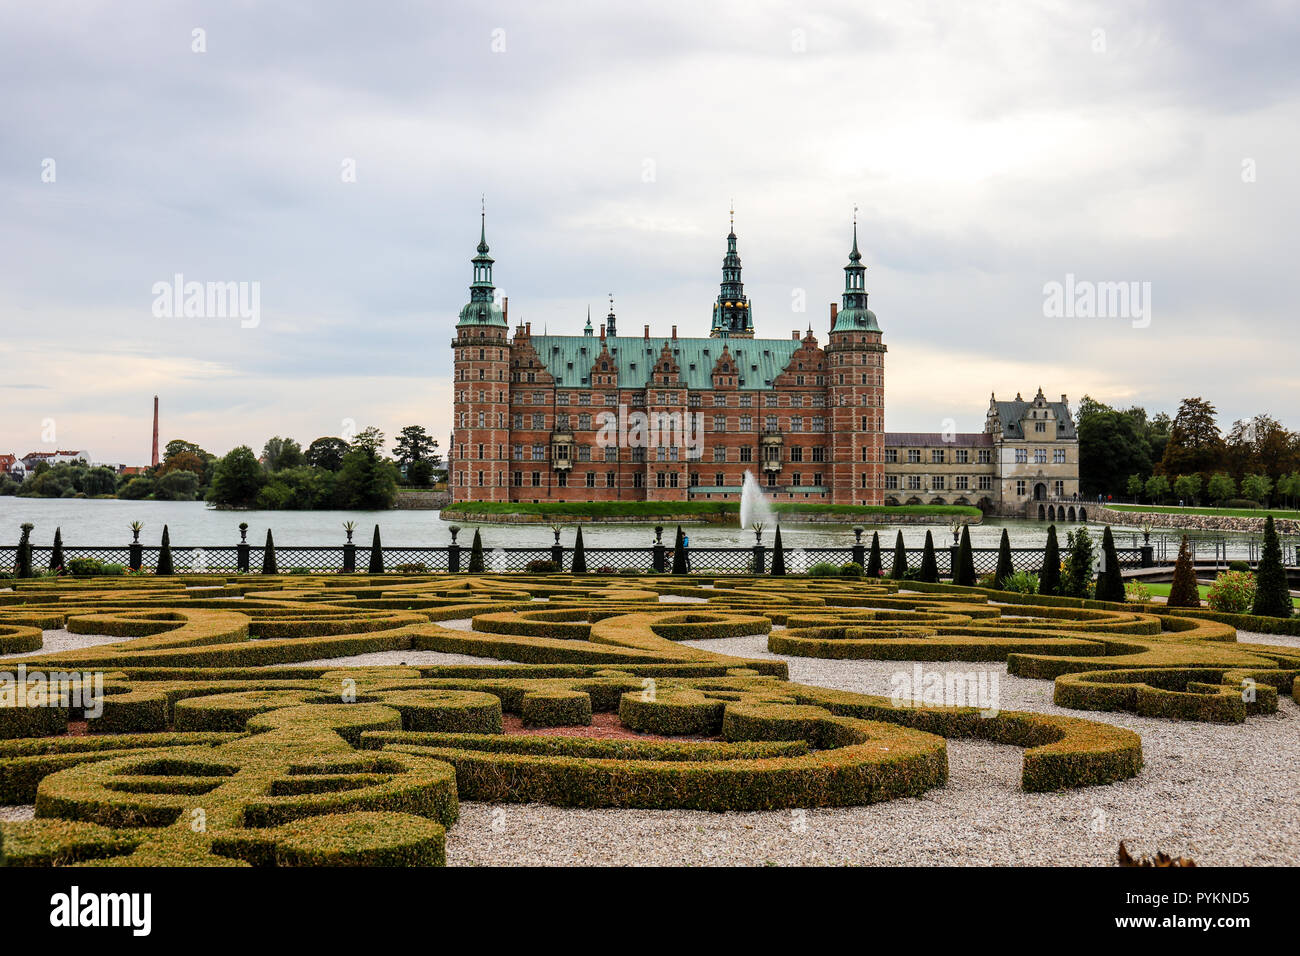 Est Frederiksborg un château Renaissance construit au 17ème siècle par le roi danois Christian IV avec son jardin baroque. Banque D'Images